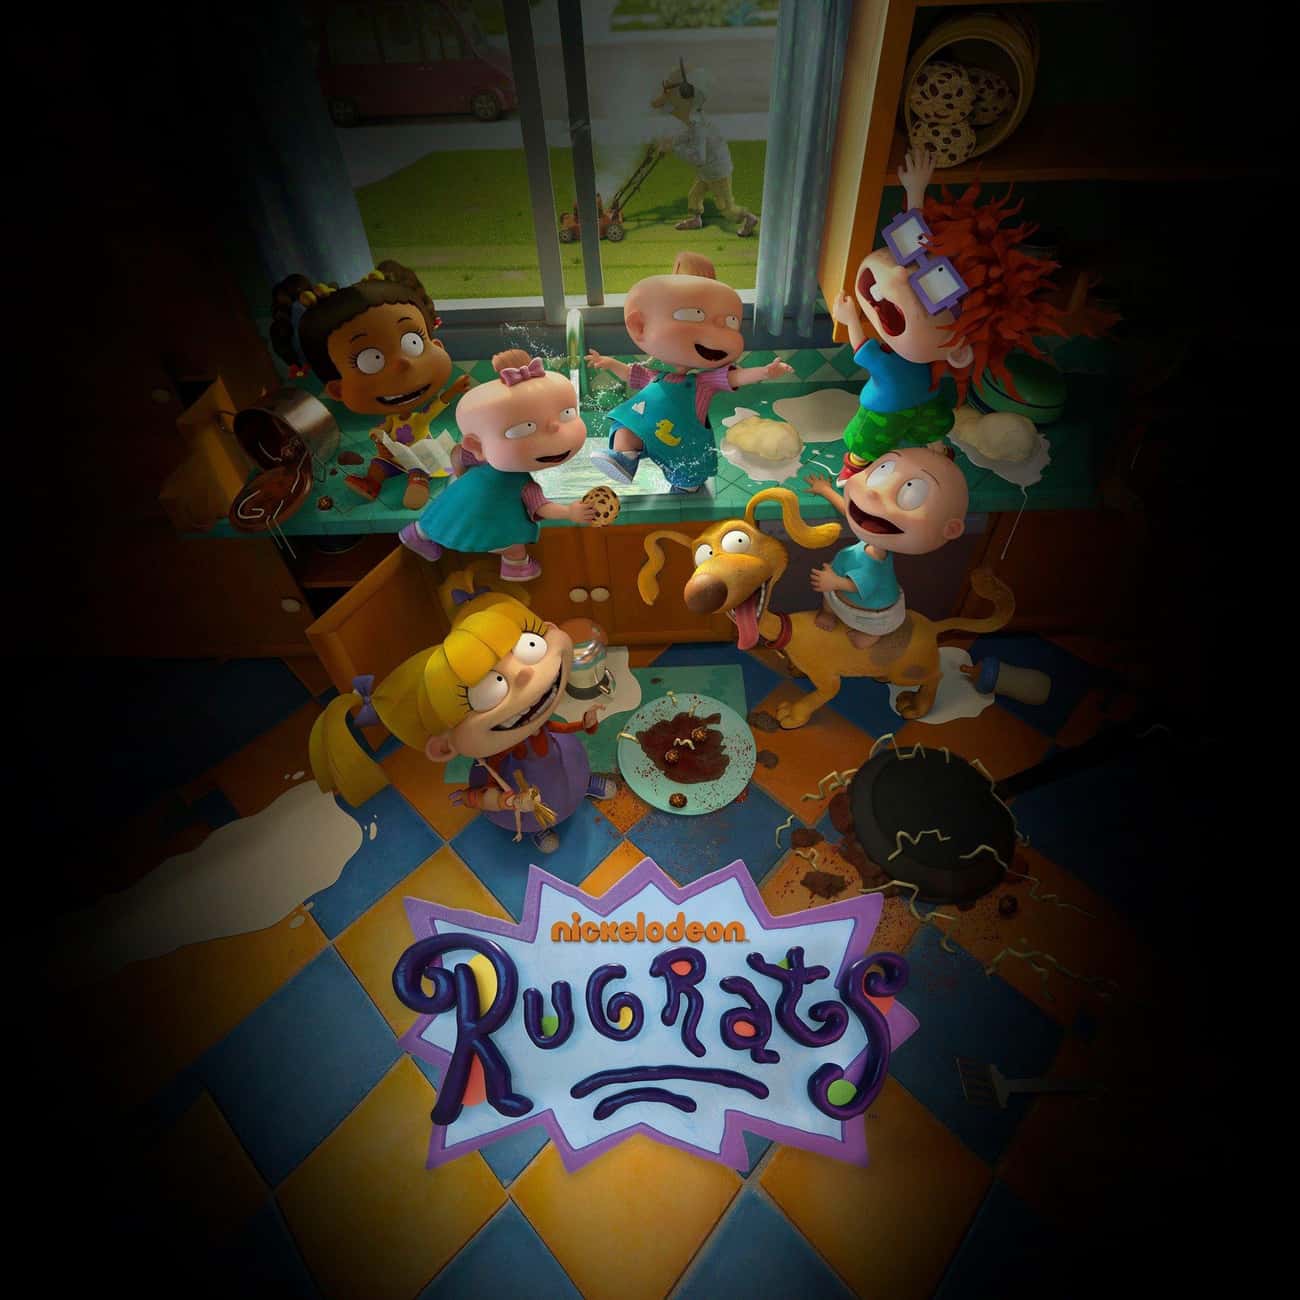 Rugrats (reboot/revival)